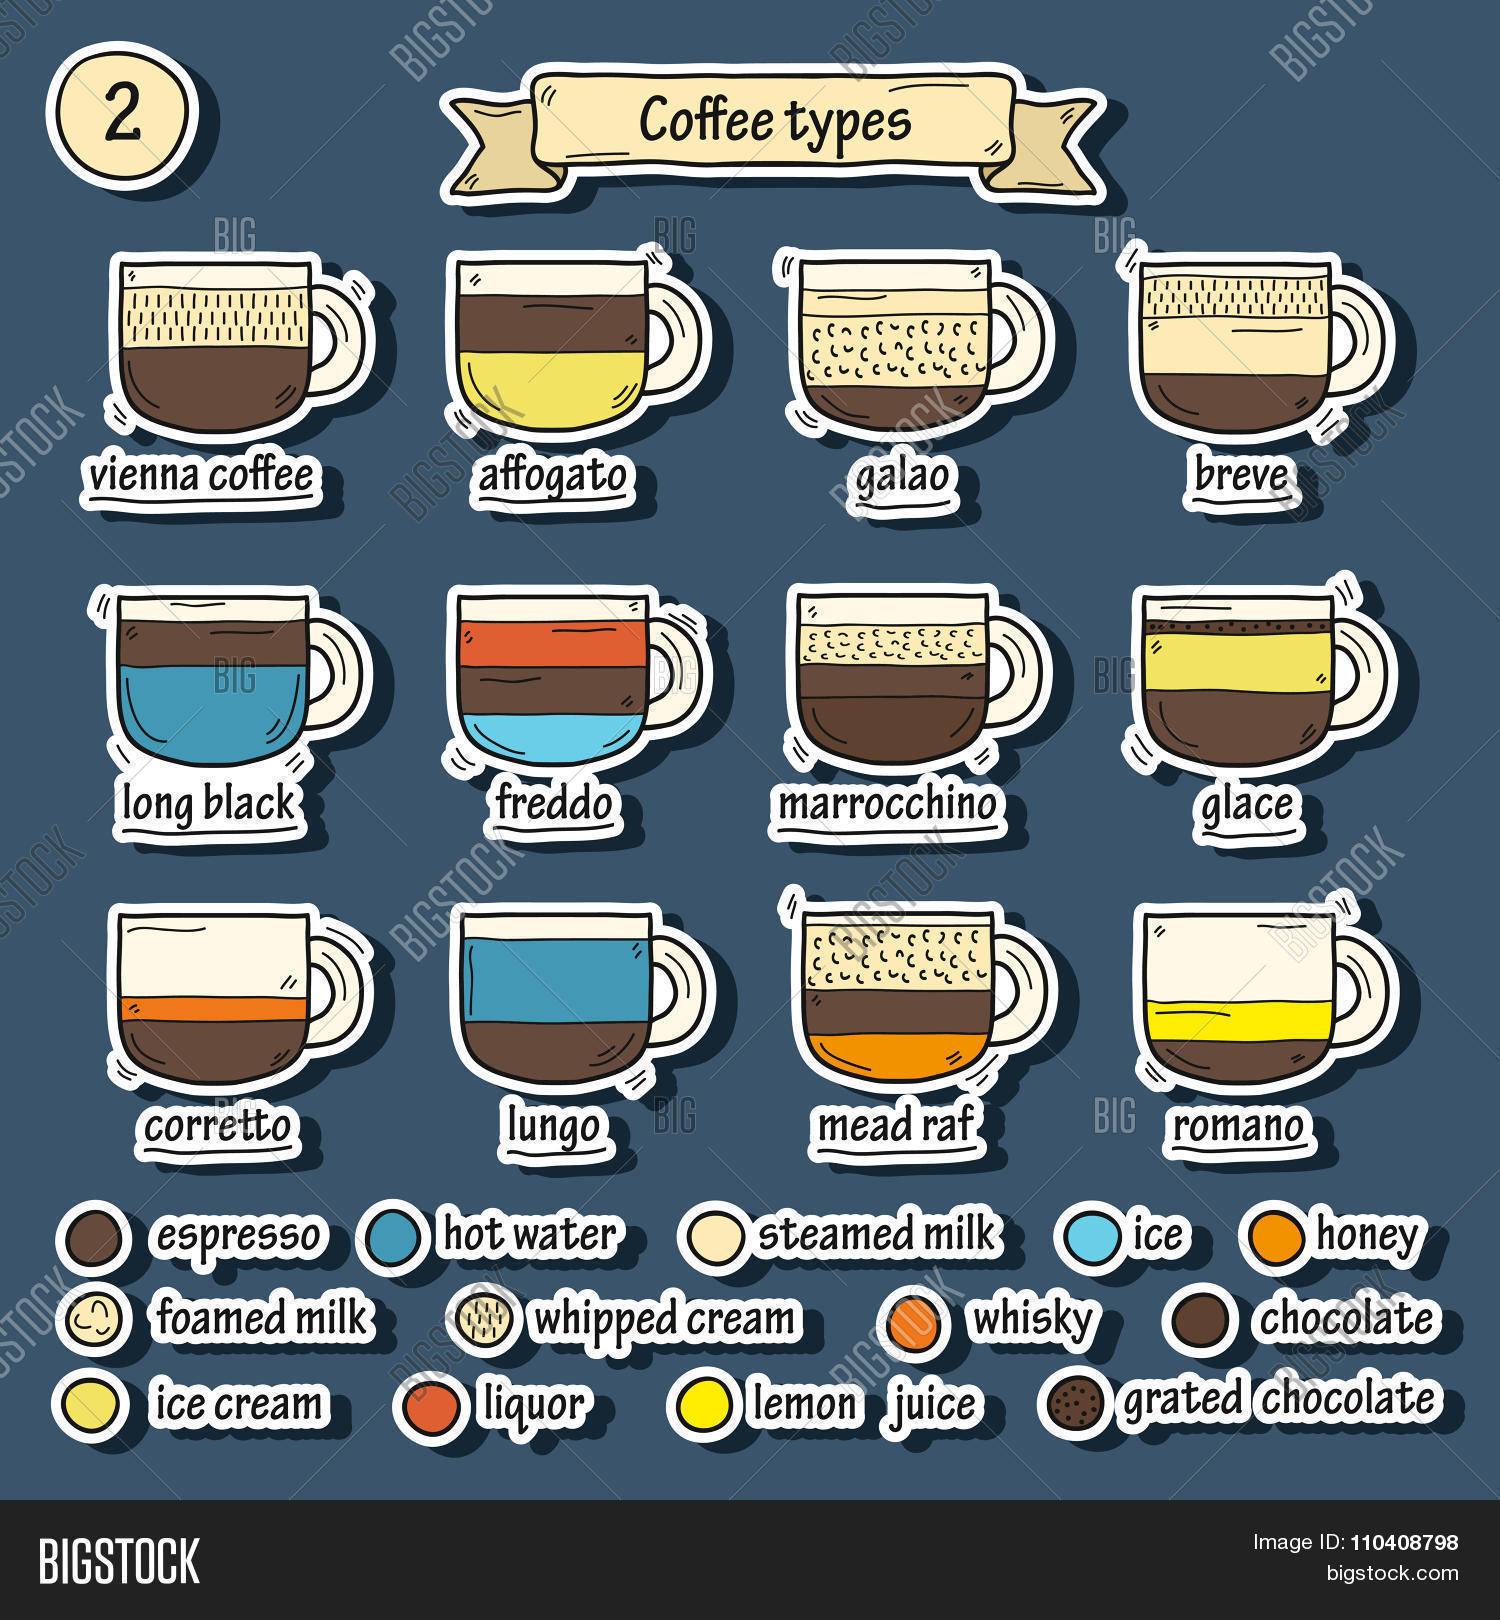 Кофе романо: понятие и классический рецепт приготовления